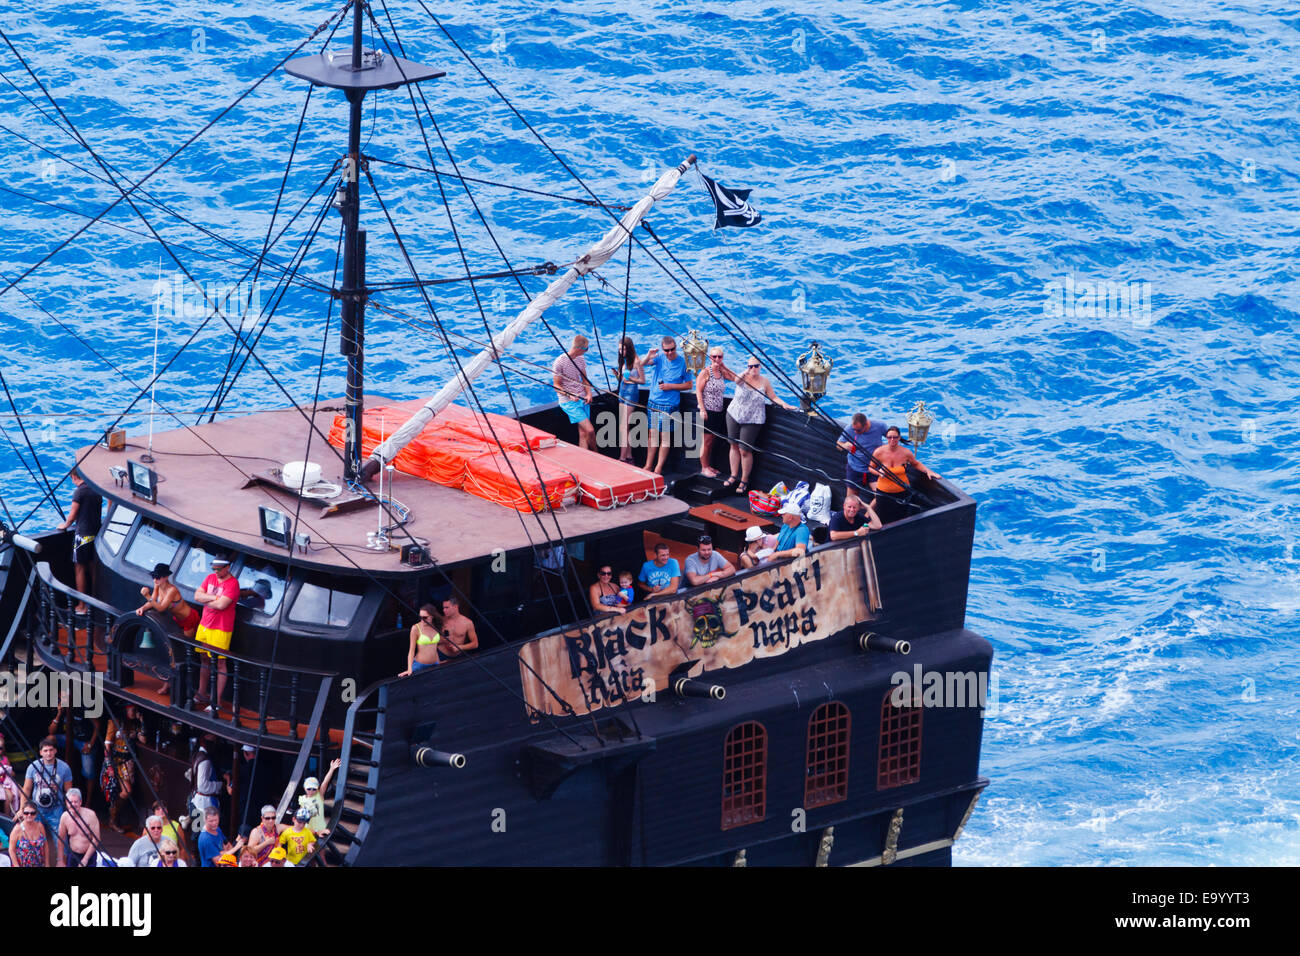 Le 'Black Pearl' partie bateau de croisière au Cap Greco à partir de ci-dessus. Ayia Napa, Chypre Banque D'Images